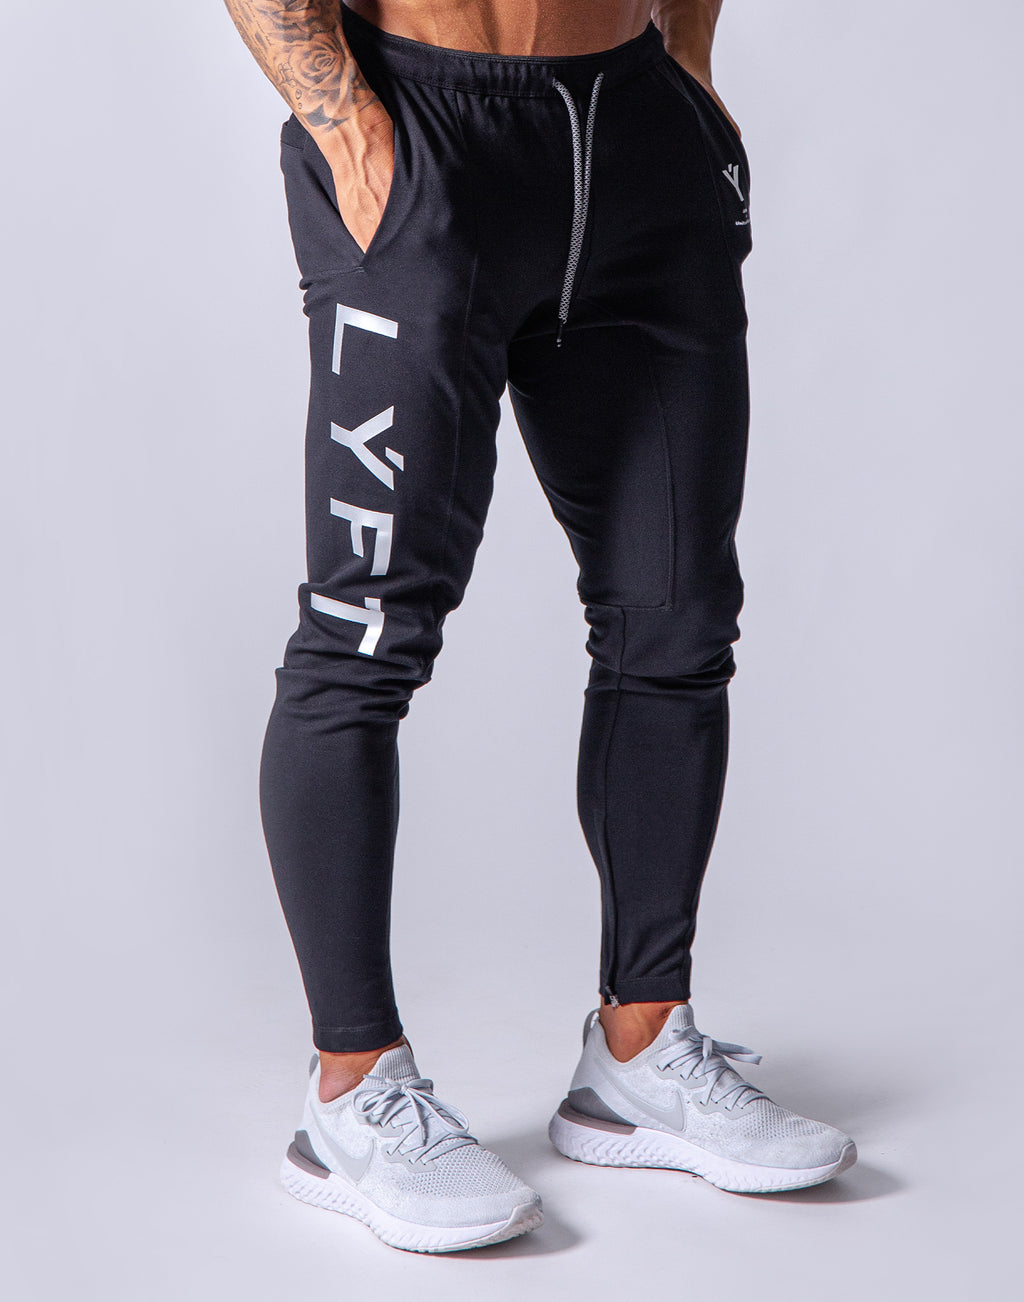 【セール新作】【山キチ様専用】LYFT ジョガー トレーニングパンツ Yロゴ パンツ